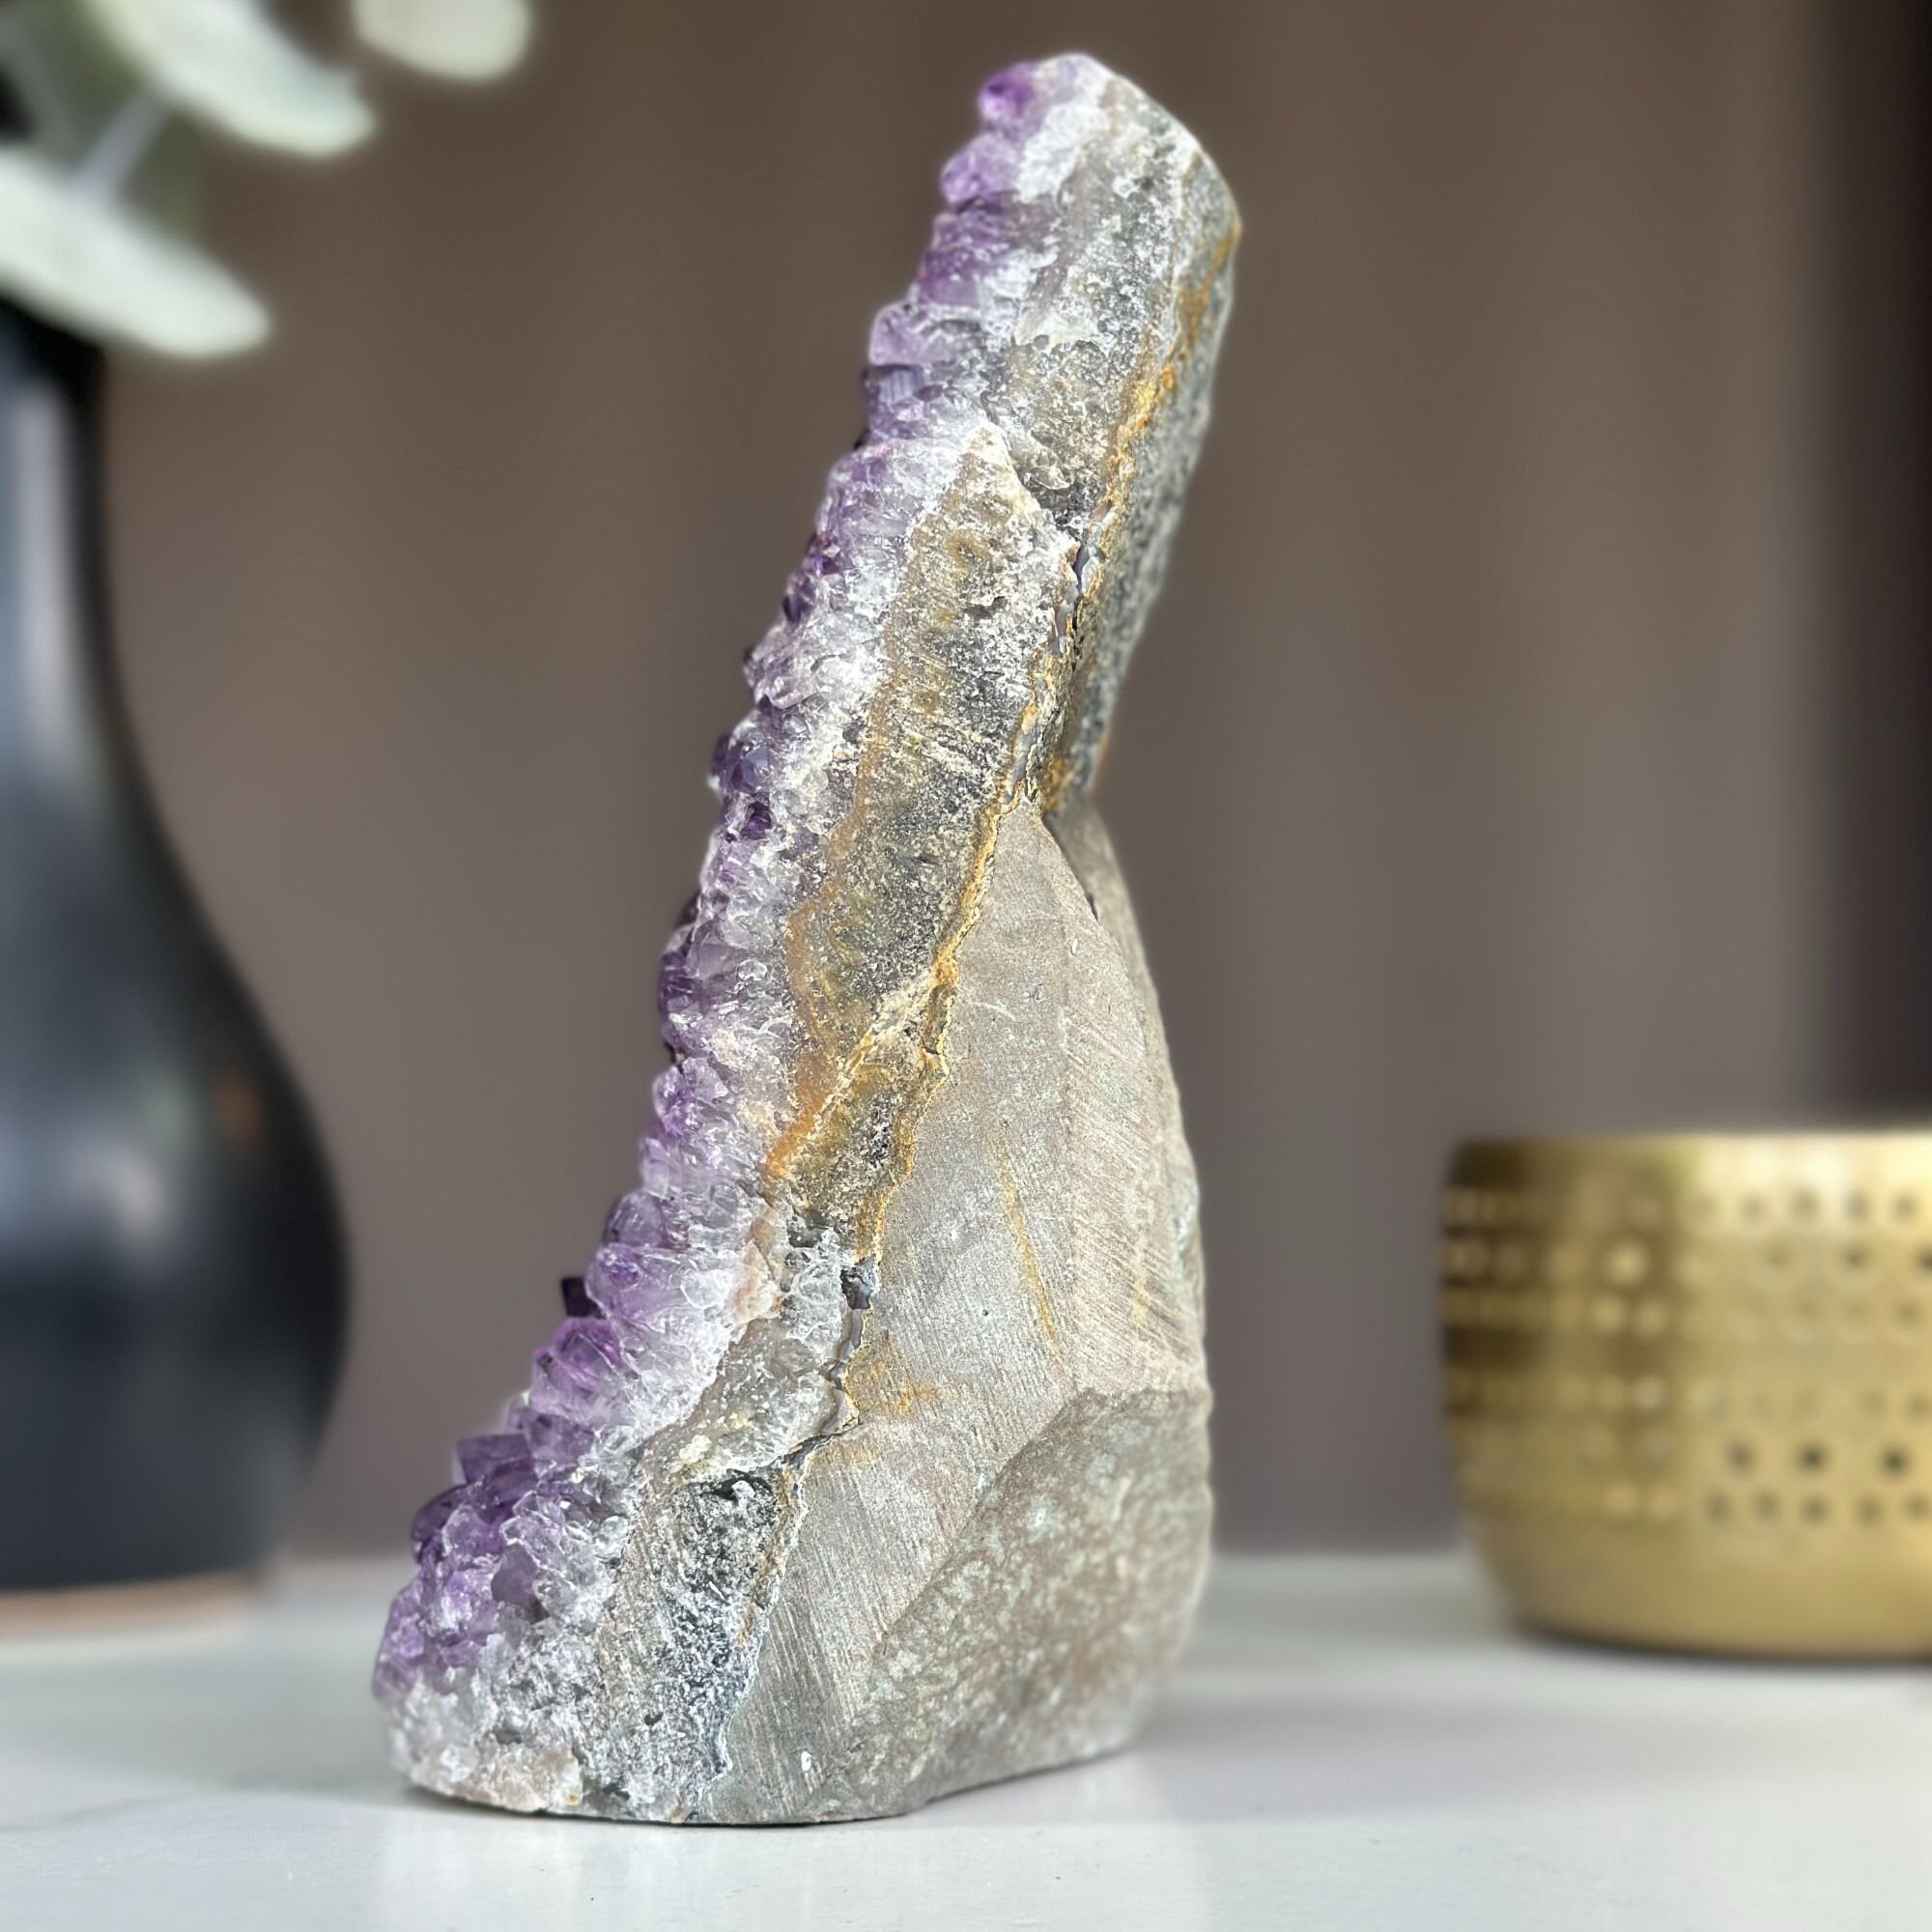 Raw Amethyst Gemstone Rock for sale, Cathedral Amethyst